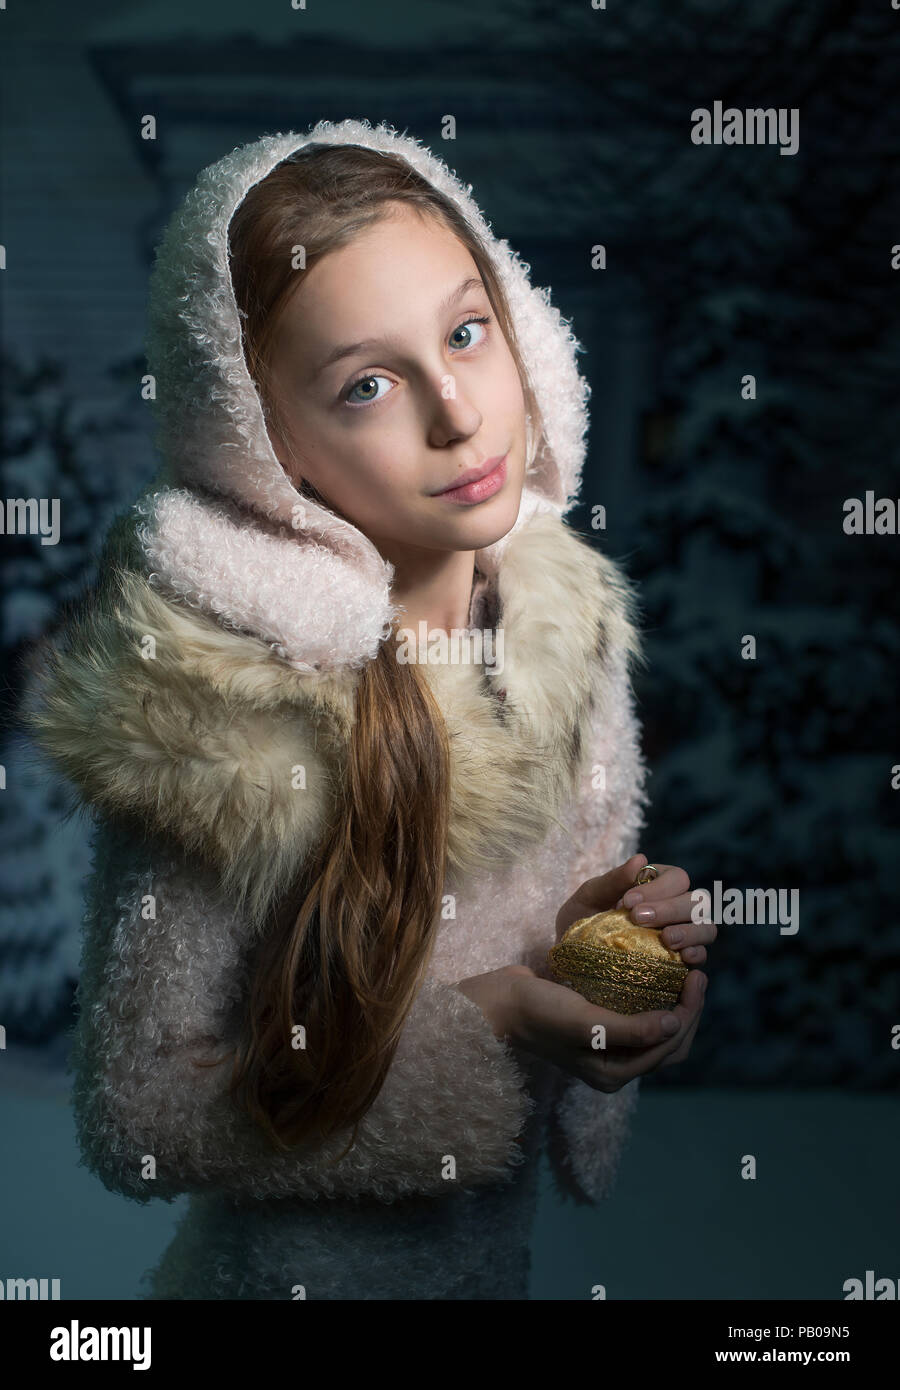 Ritratto di una ragazza in piedi nella neve tenendo un golden ninnolo Foto Stock